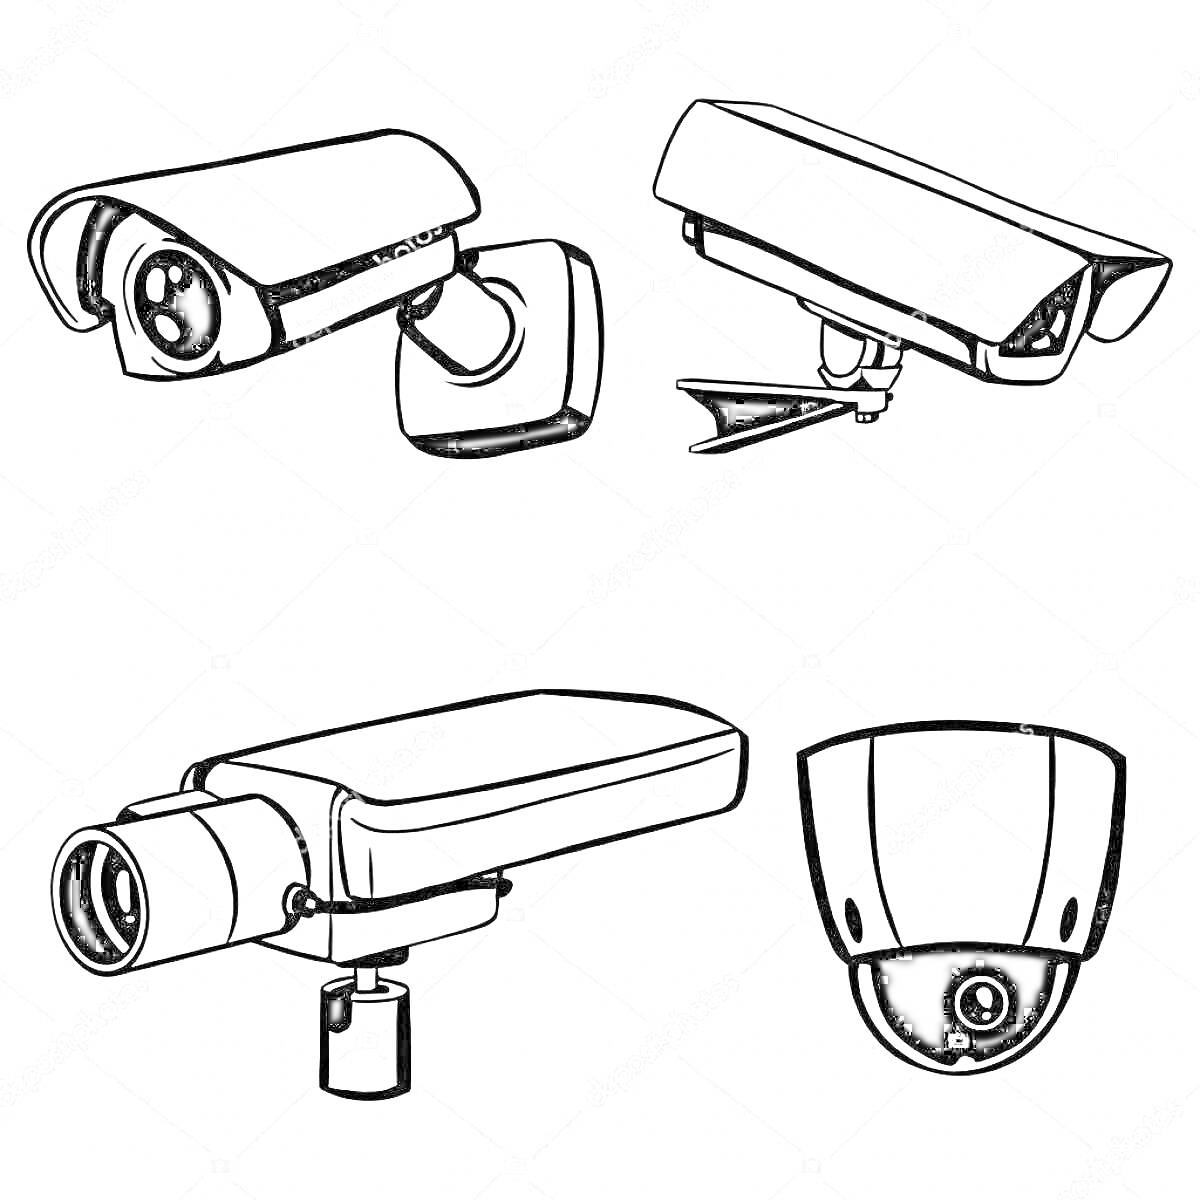 Четыре типа видеокамер: камера с защитным козырьком, камера с крепежным кронштейном, видеокамера цилиндрической формы и купольная камера.